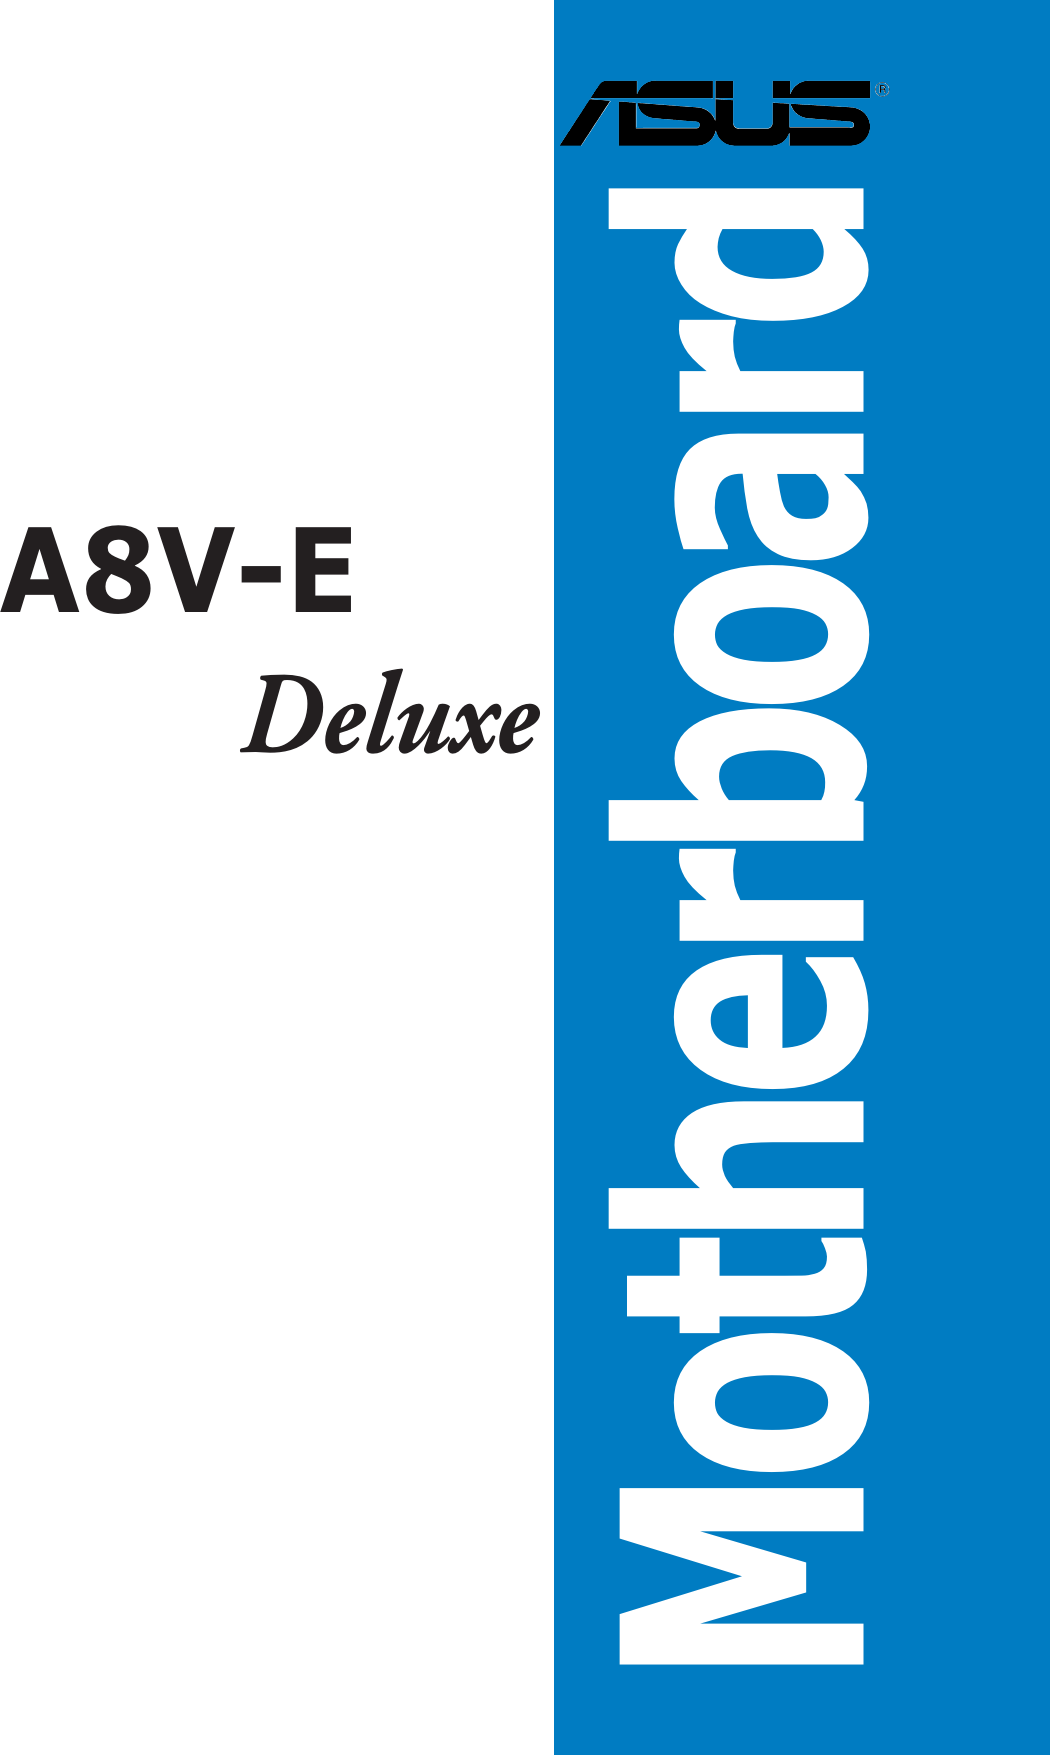 MotherboardA8V-EDeluxe